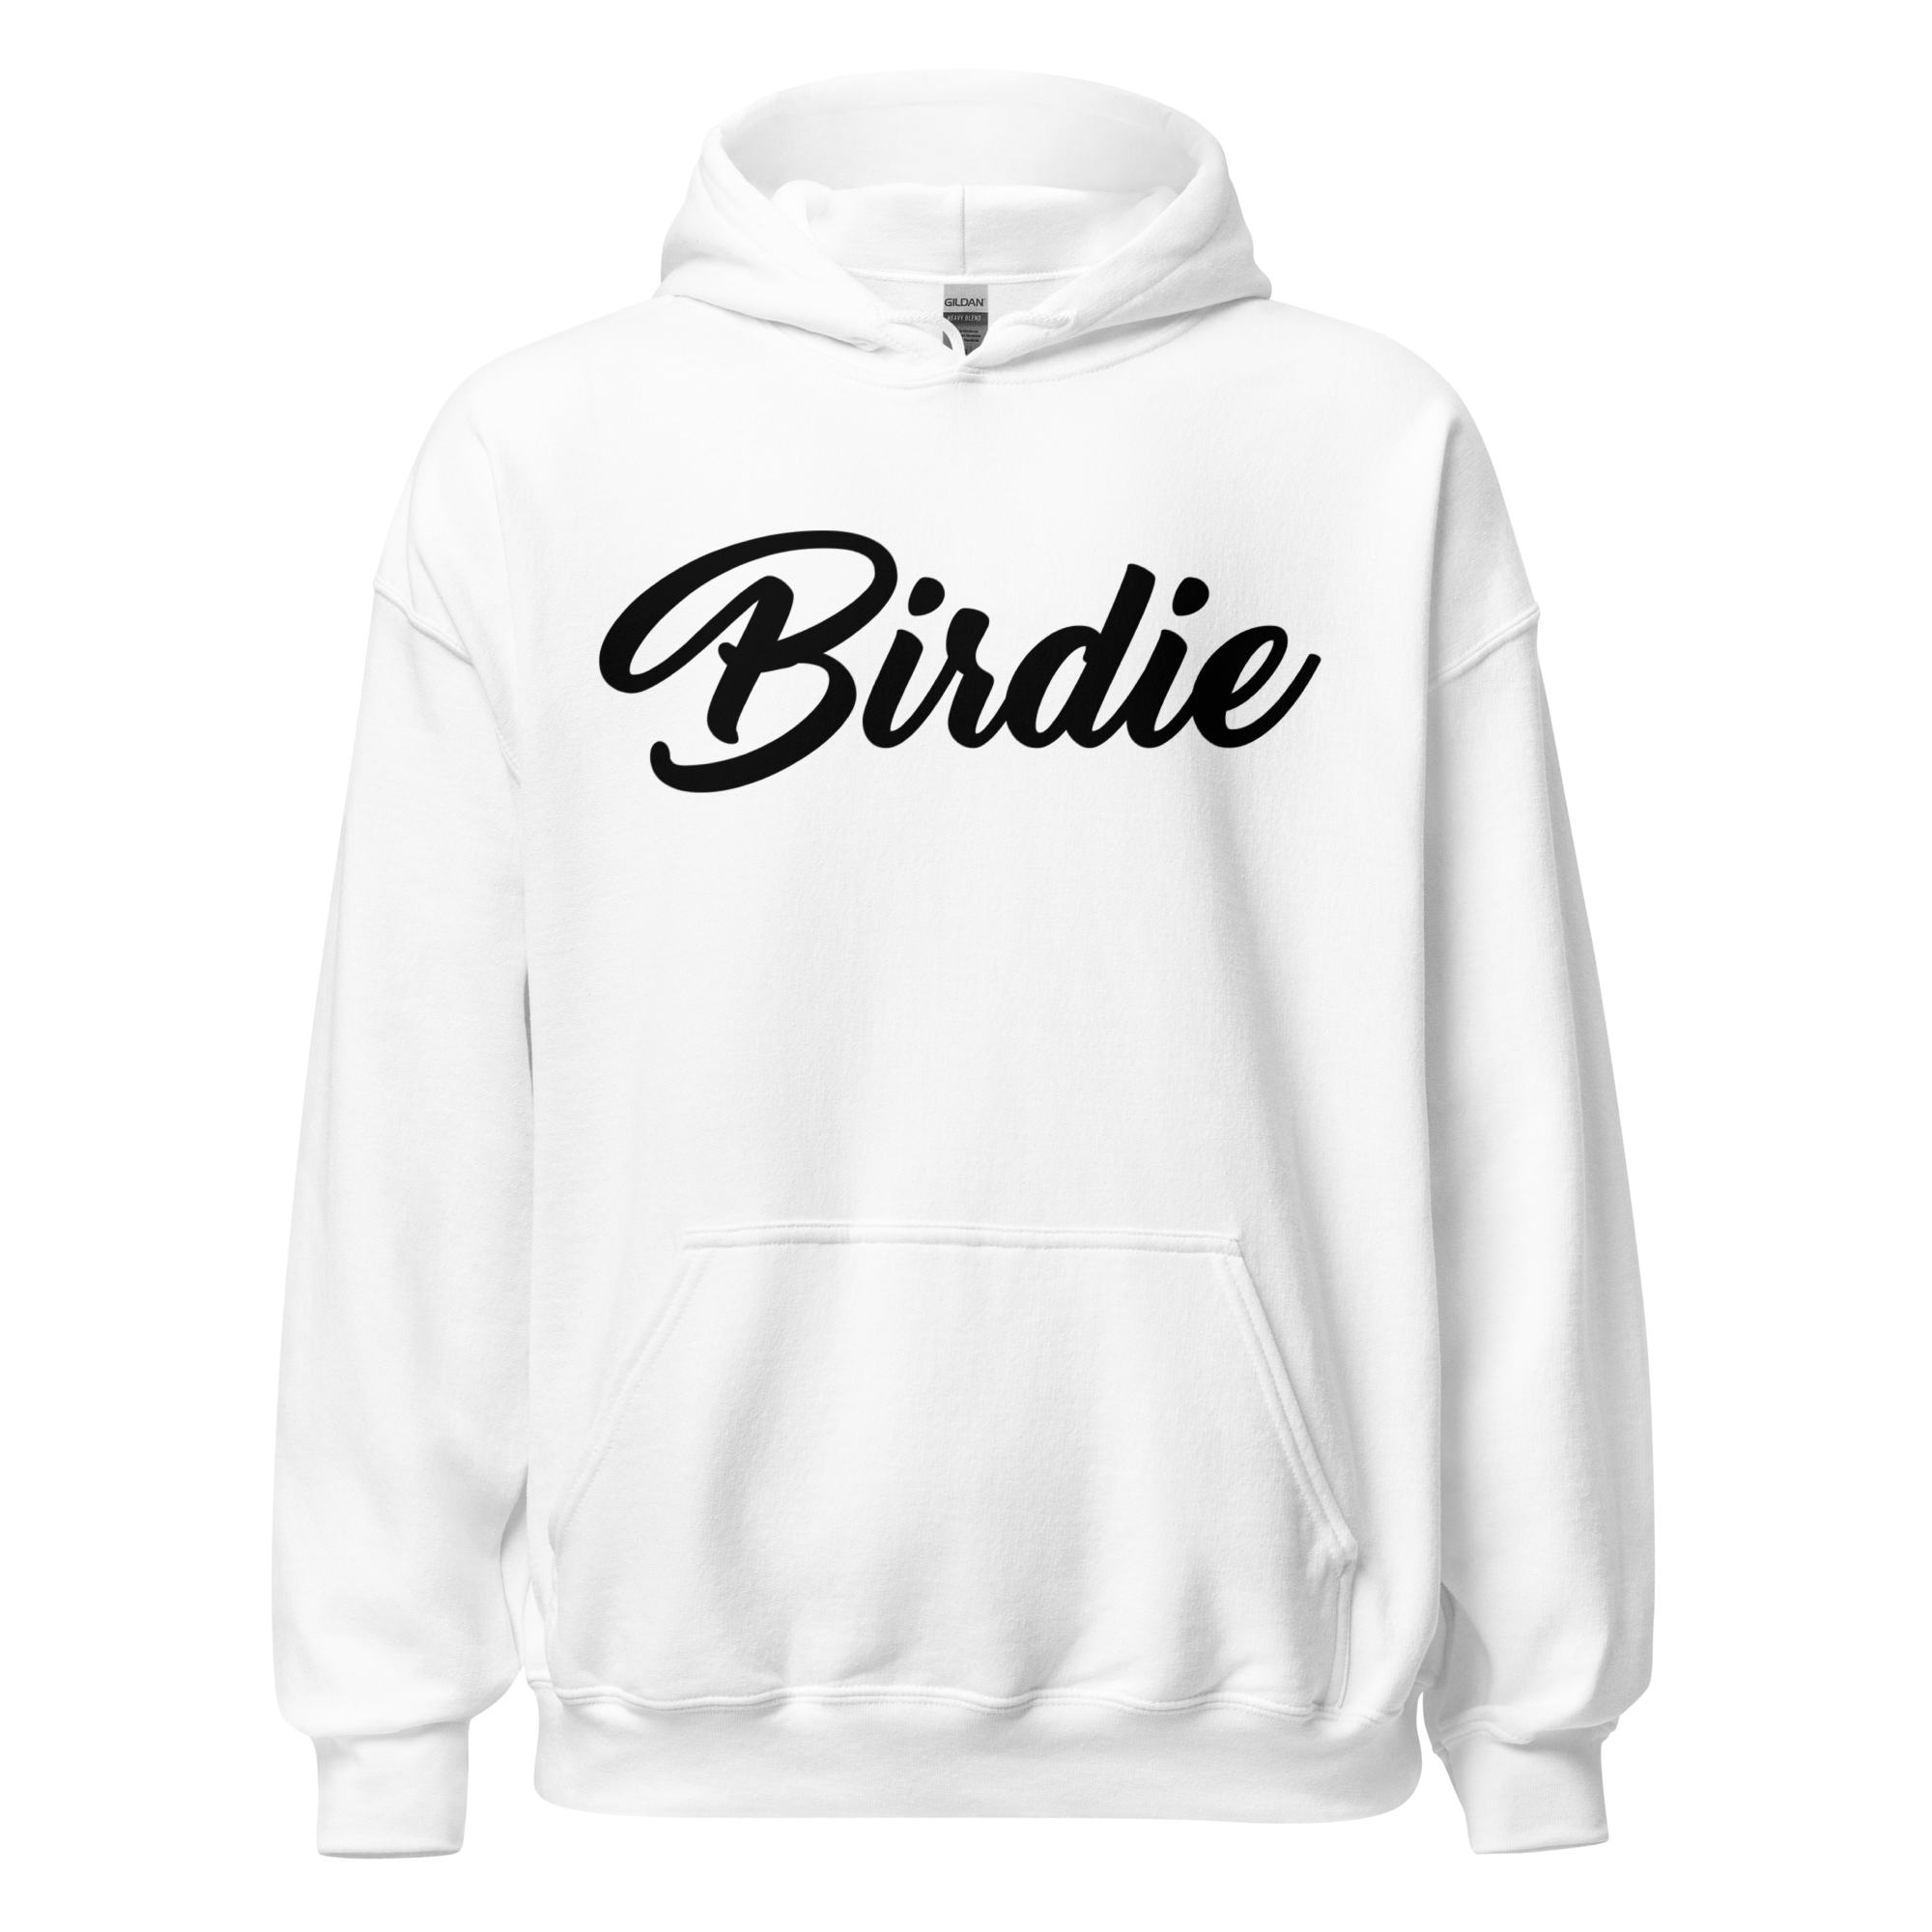 Birdie Threads Hoodie - White / Black